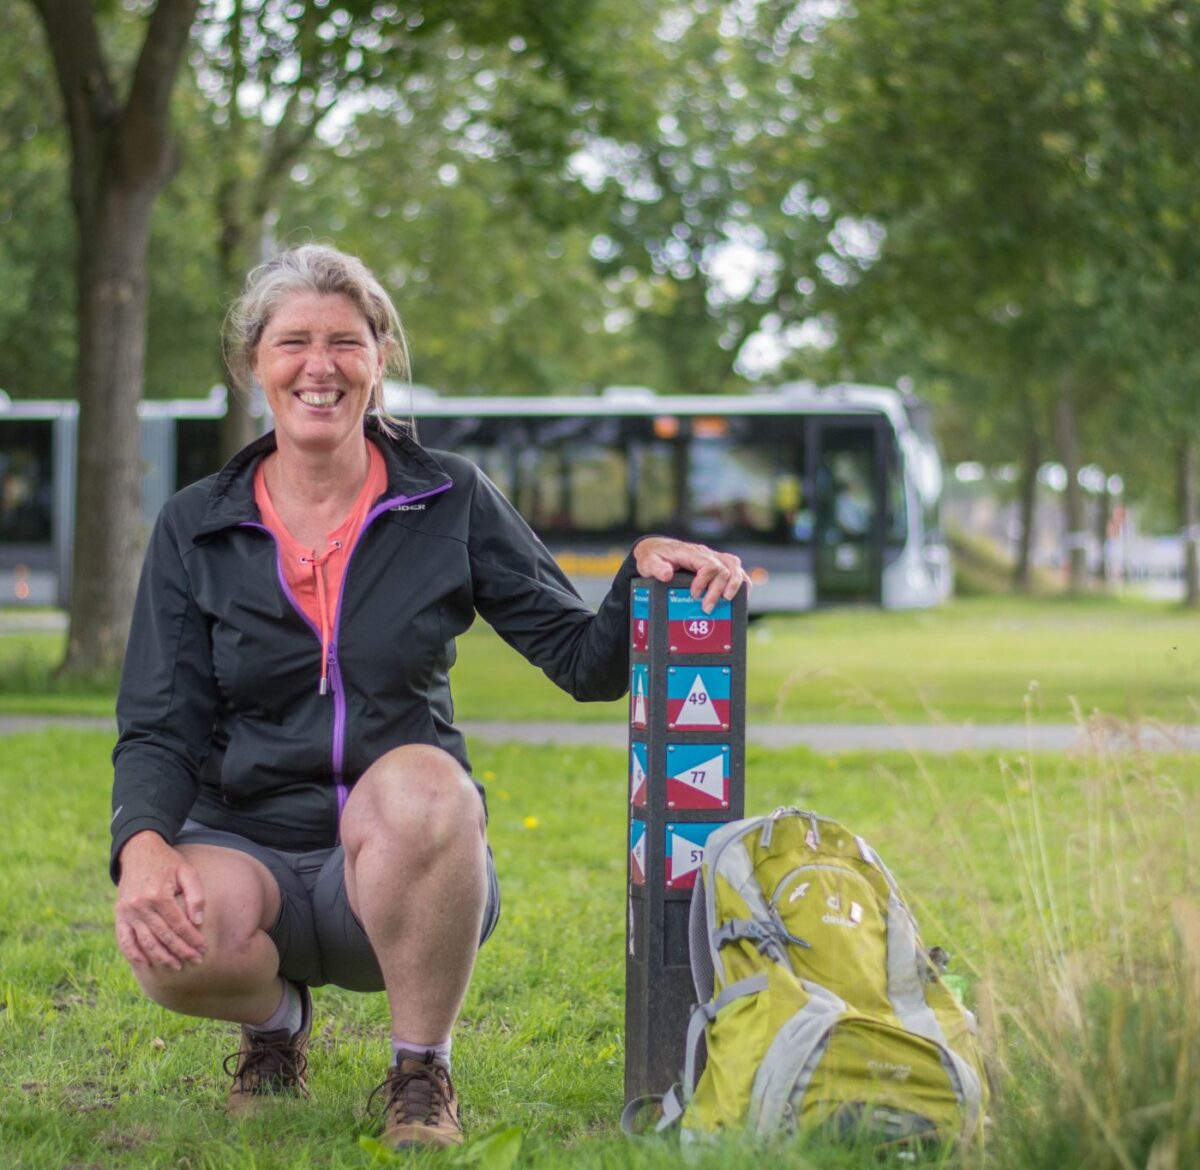 Detty maakt als fitstap-coach in opleiding gebruik van de wandelroutes via hubs. Zij zit geknield bij een routepaaltje van Wandelnetwerk Groningen. Achter haar rijdt een bus.